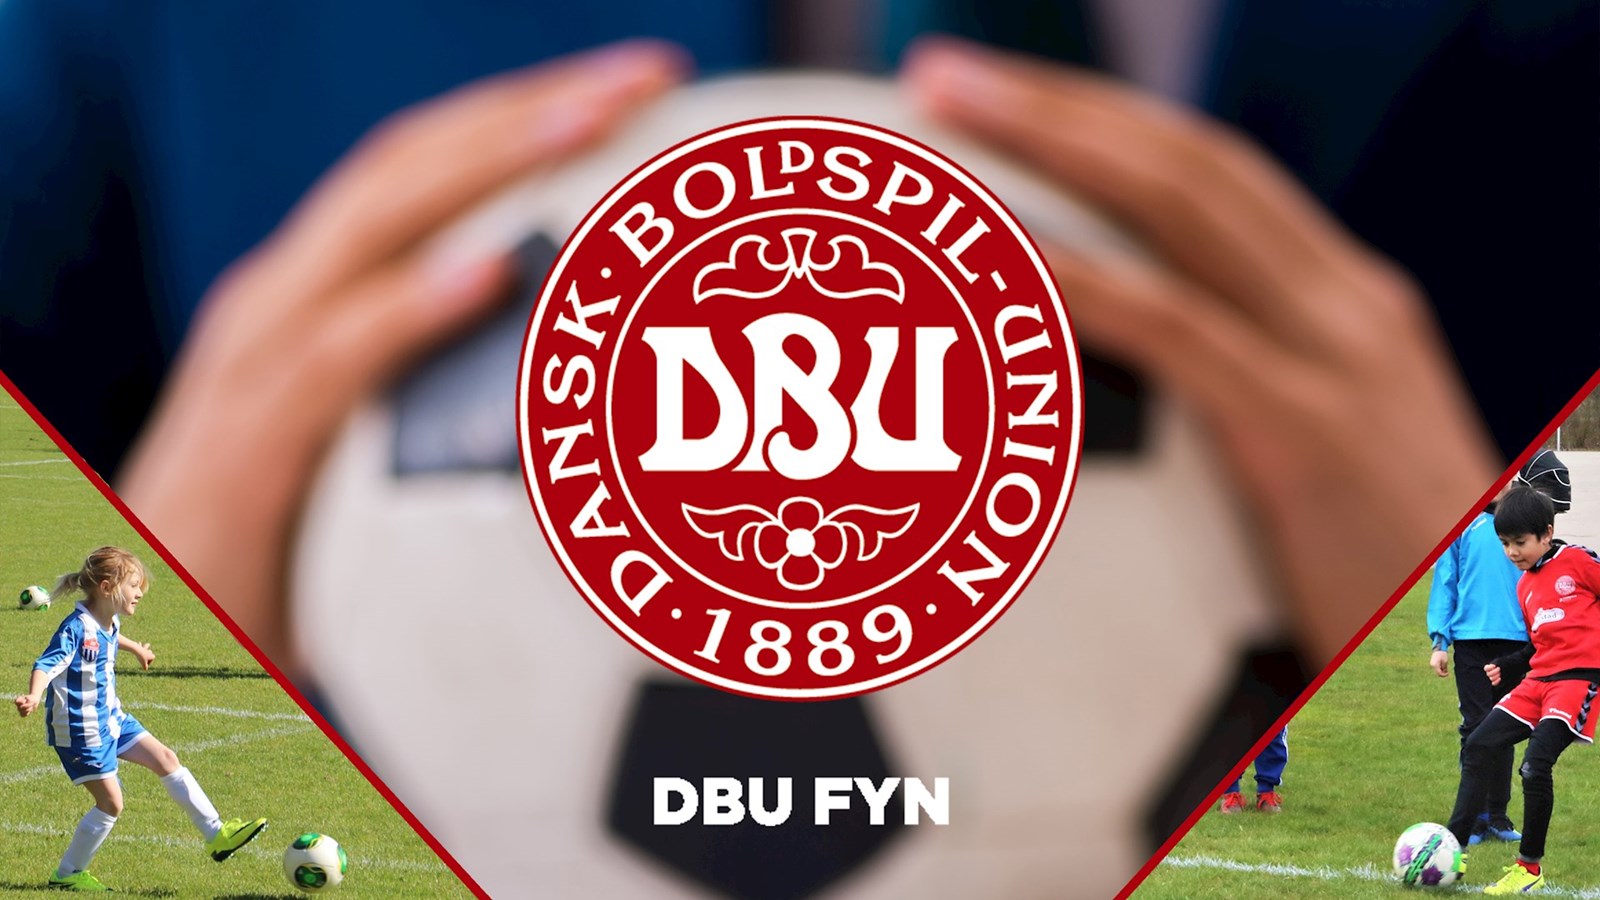 DBU Fyn tilbyder spændende job med fokus på fynsk børnefodbold